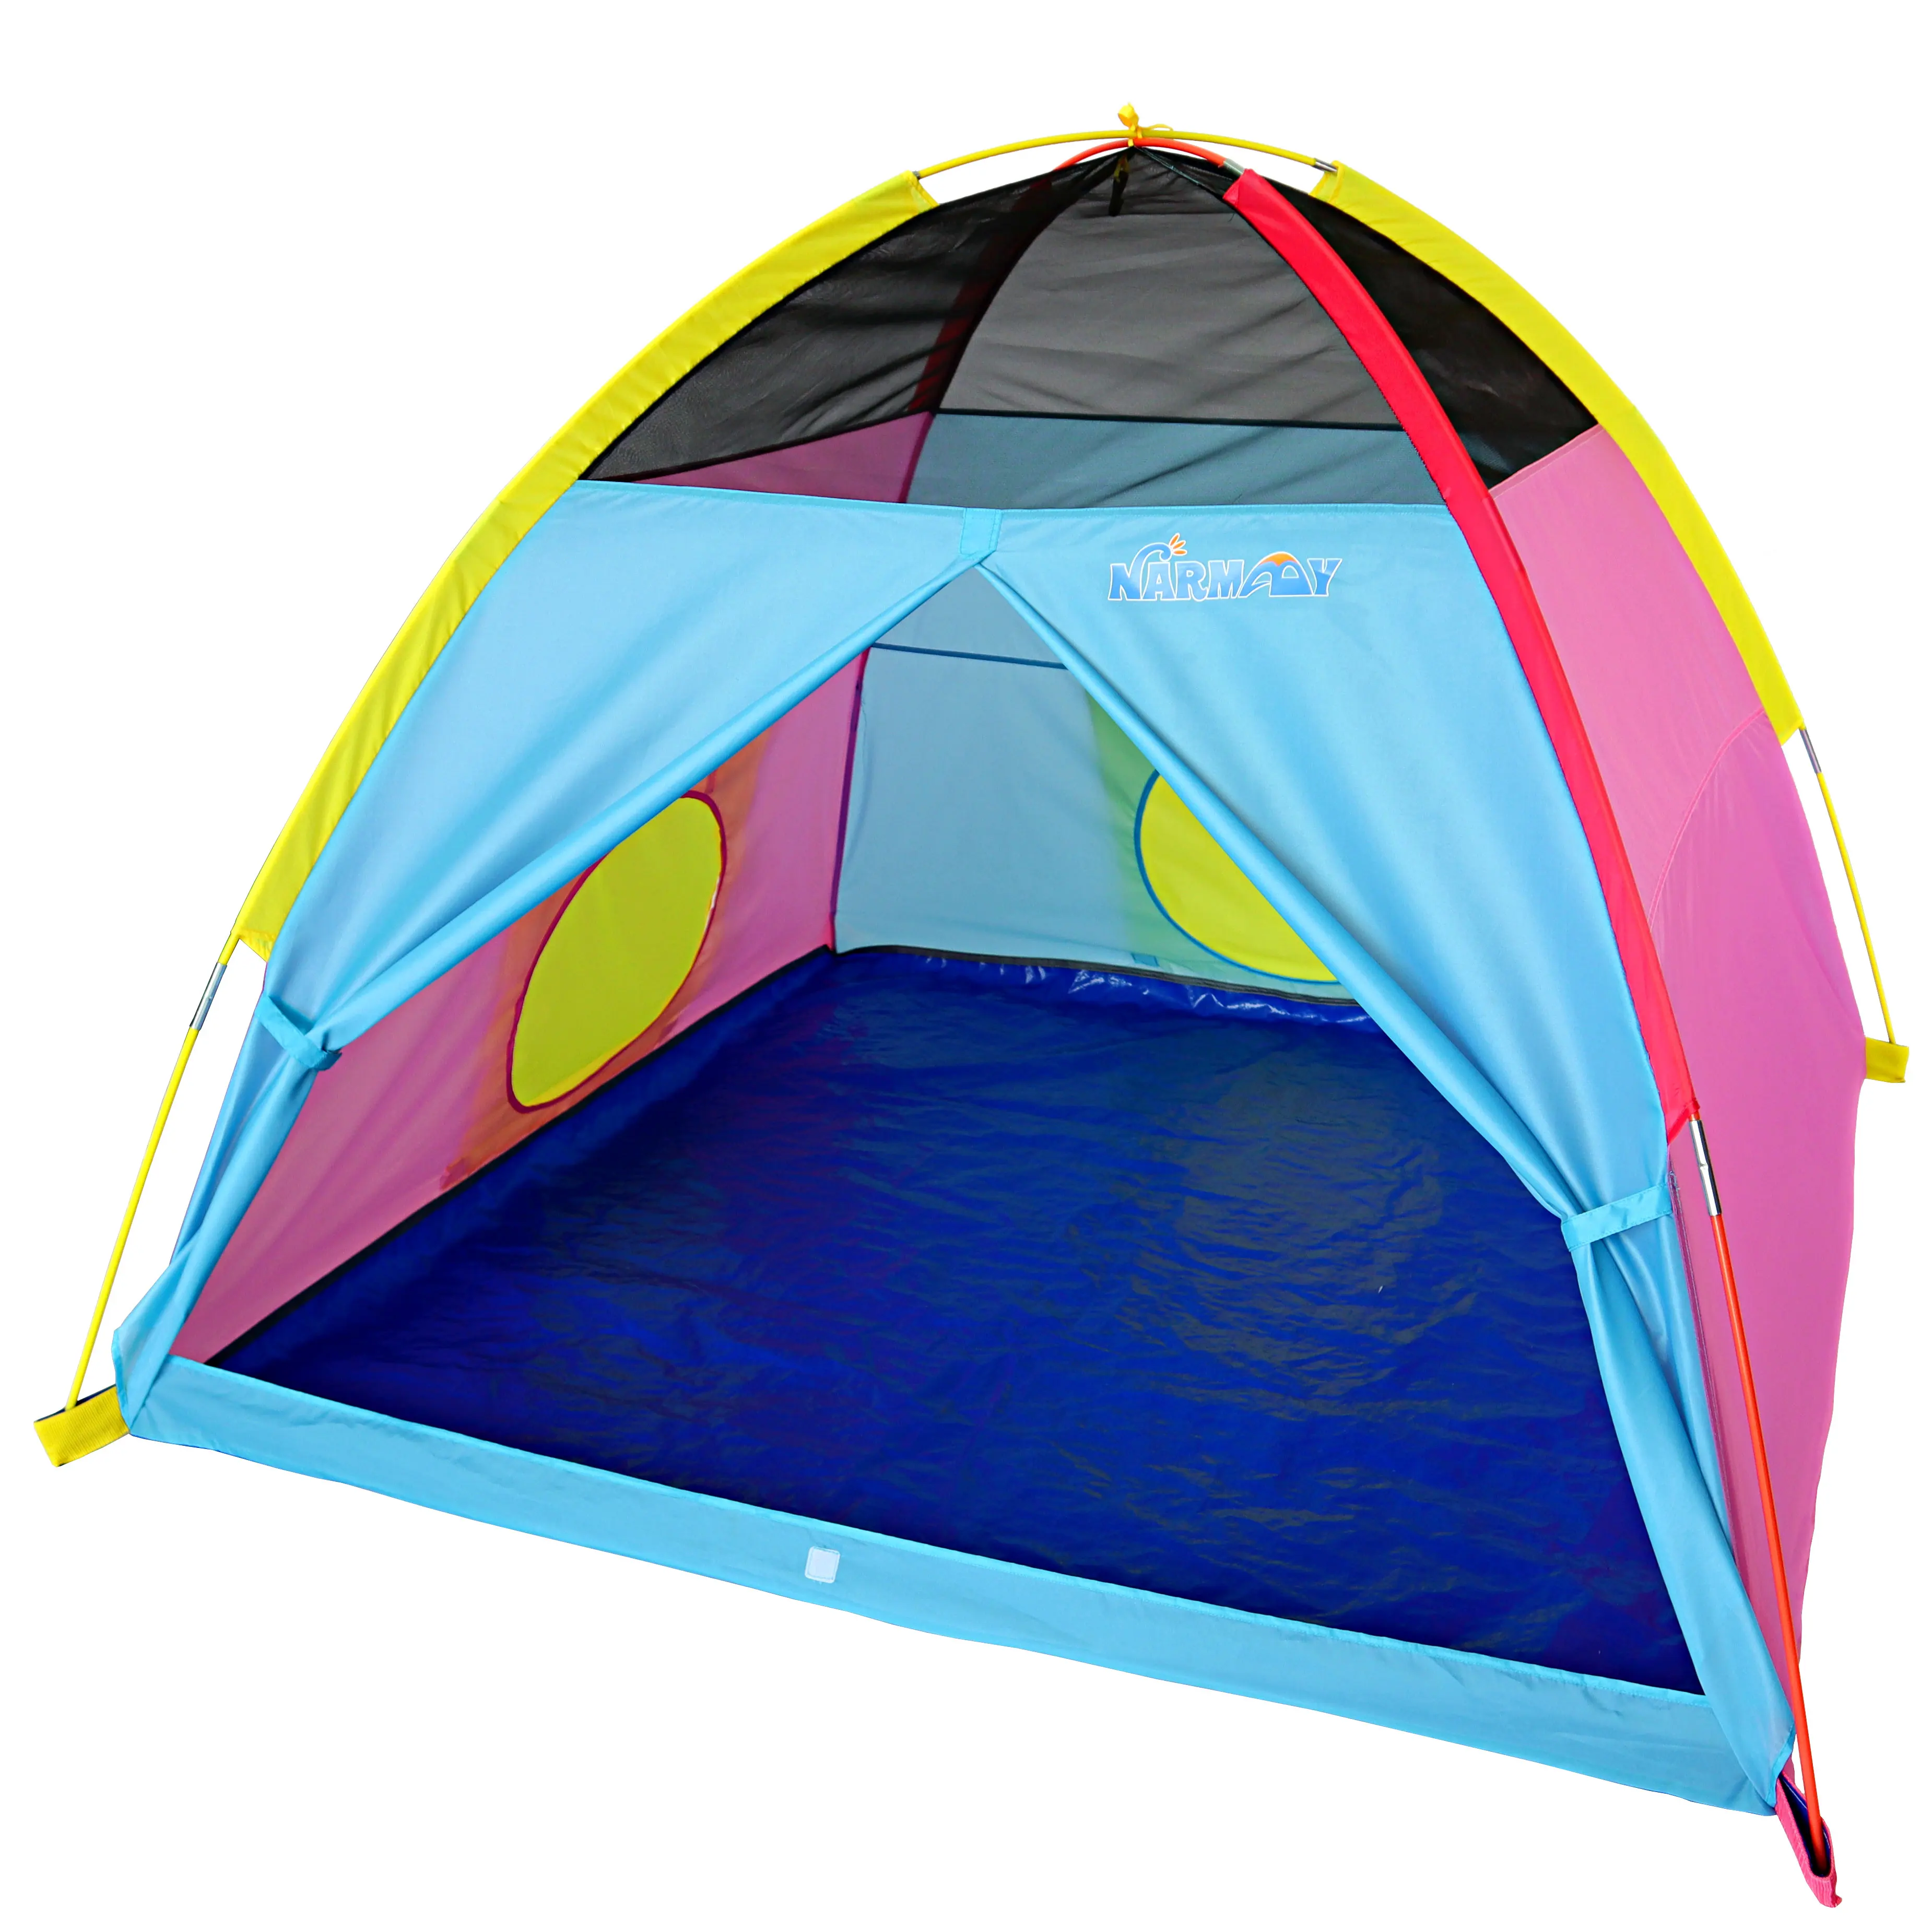 Игровая-палатка-narmay-easy-joy-купольная-палатка-для-детей-для-помещений-и-улицы-152x152x111-см